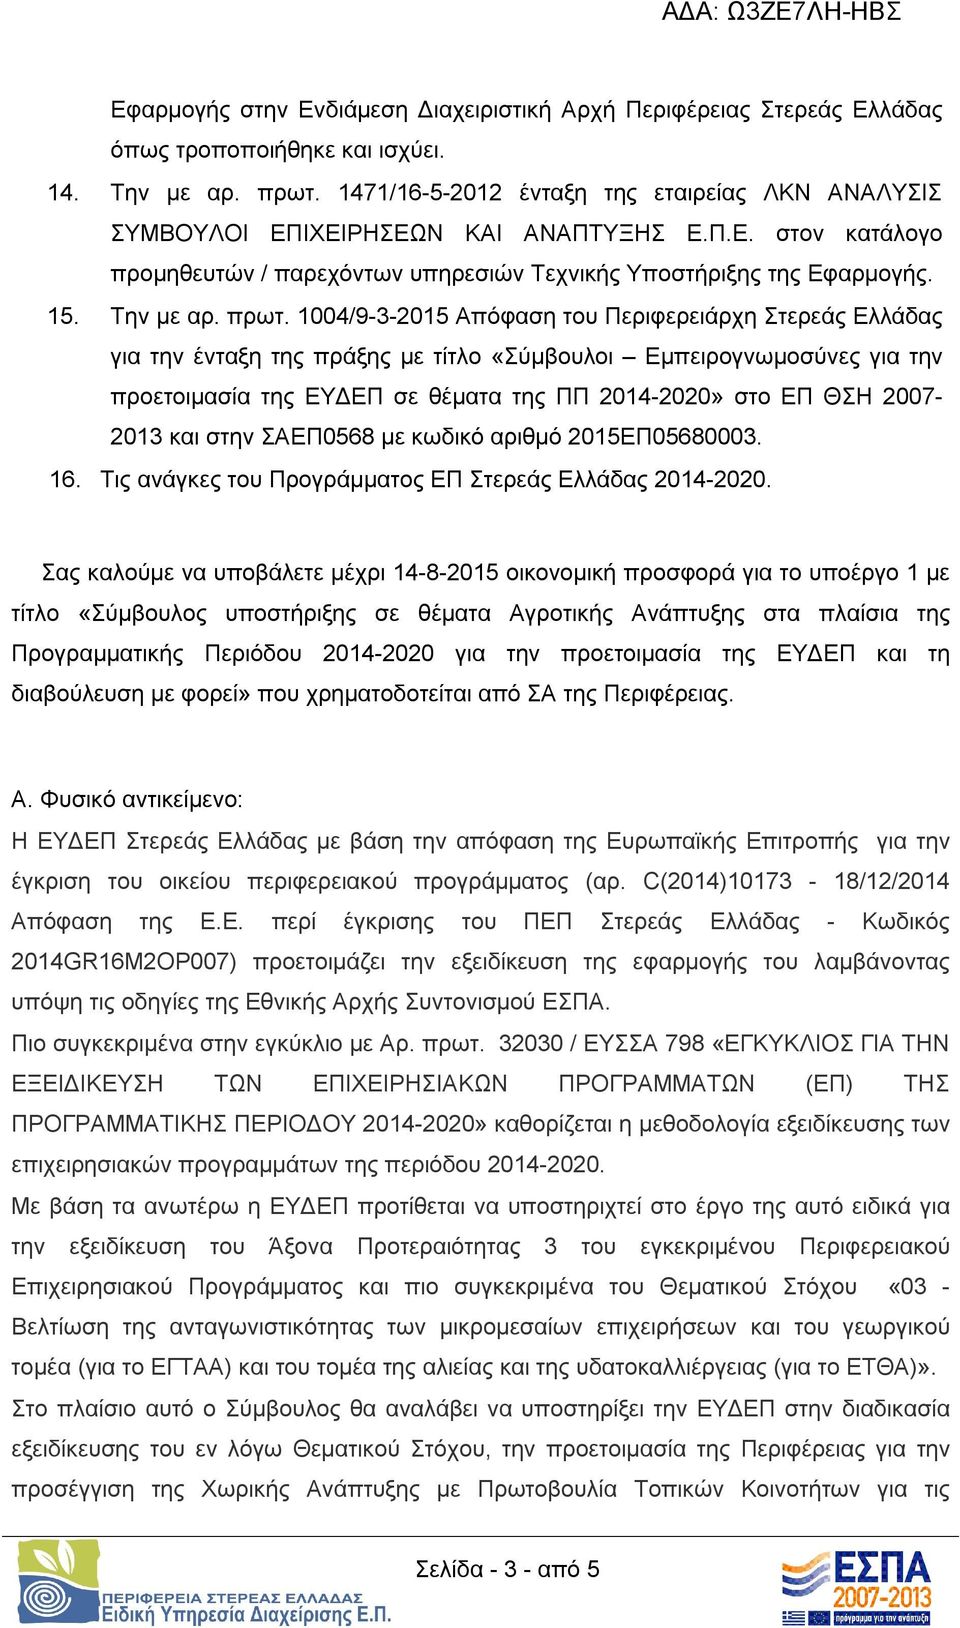 1004/9-3-2015 Απόφαση του Περιφερειάρχη Στερεάς Ελλάδας για την ένταξη της πράξης με τίτλο «Σύμβουλοι Εμπειρογνωμοσύνες για την προετοιμασία της ΕΥΔΕΠ σε θέματα της ΠΠ 2014-2020» στο ΕΠ ΘΣΗ 2007-2013